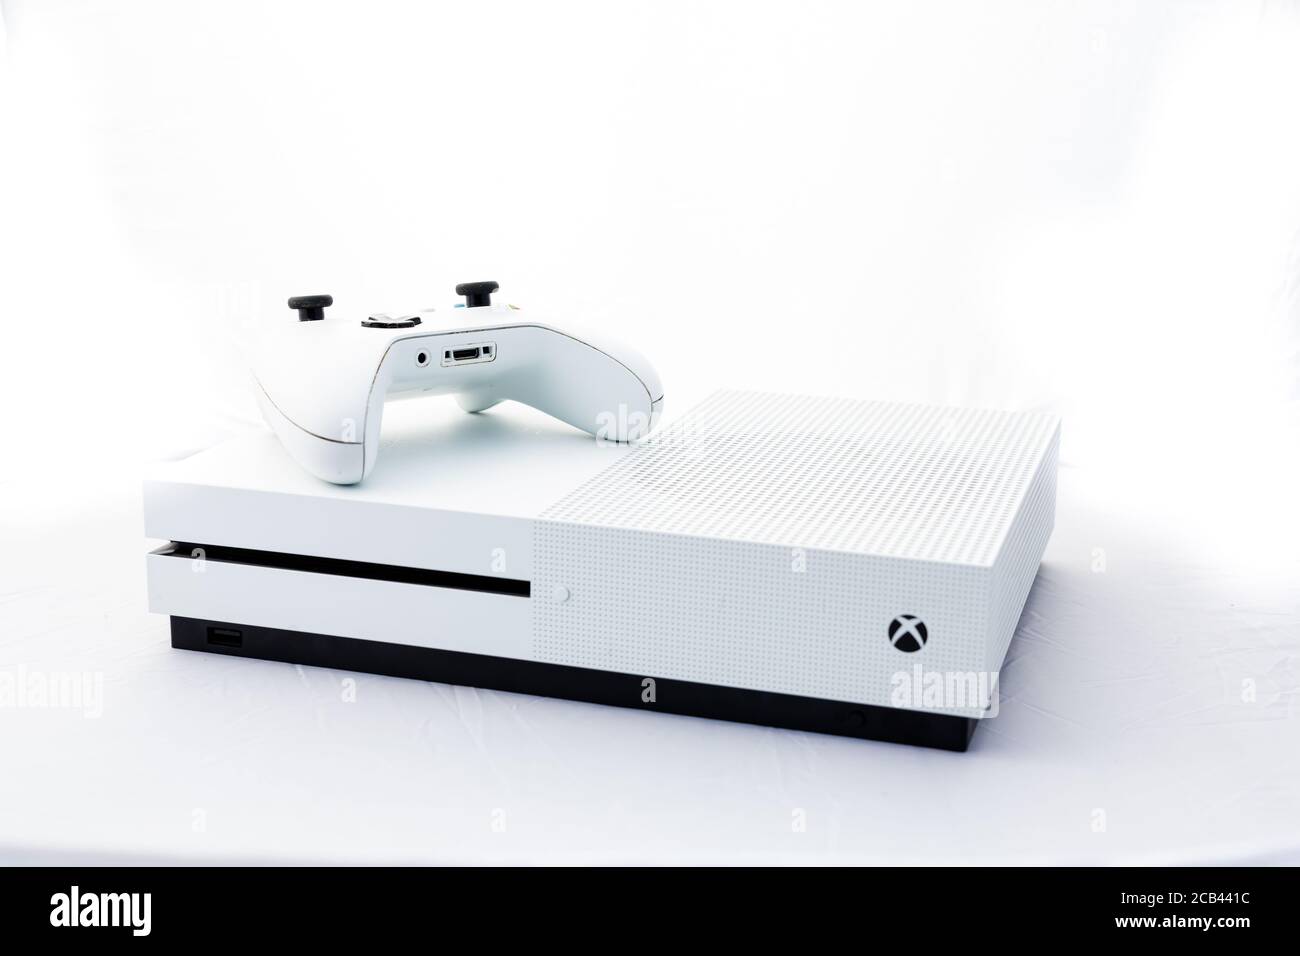 Suffolk, Reino Unido Junio 01 2020: Una consola de juegos Microsoft Xbox One S con un mando inalámbrico disparado contra un fondo blanco Foto de stock